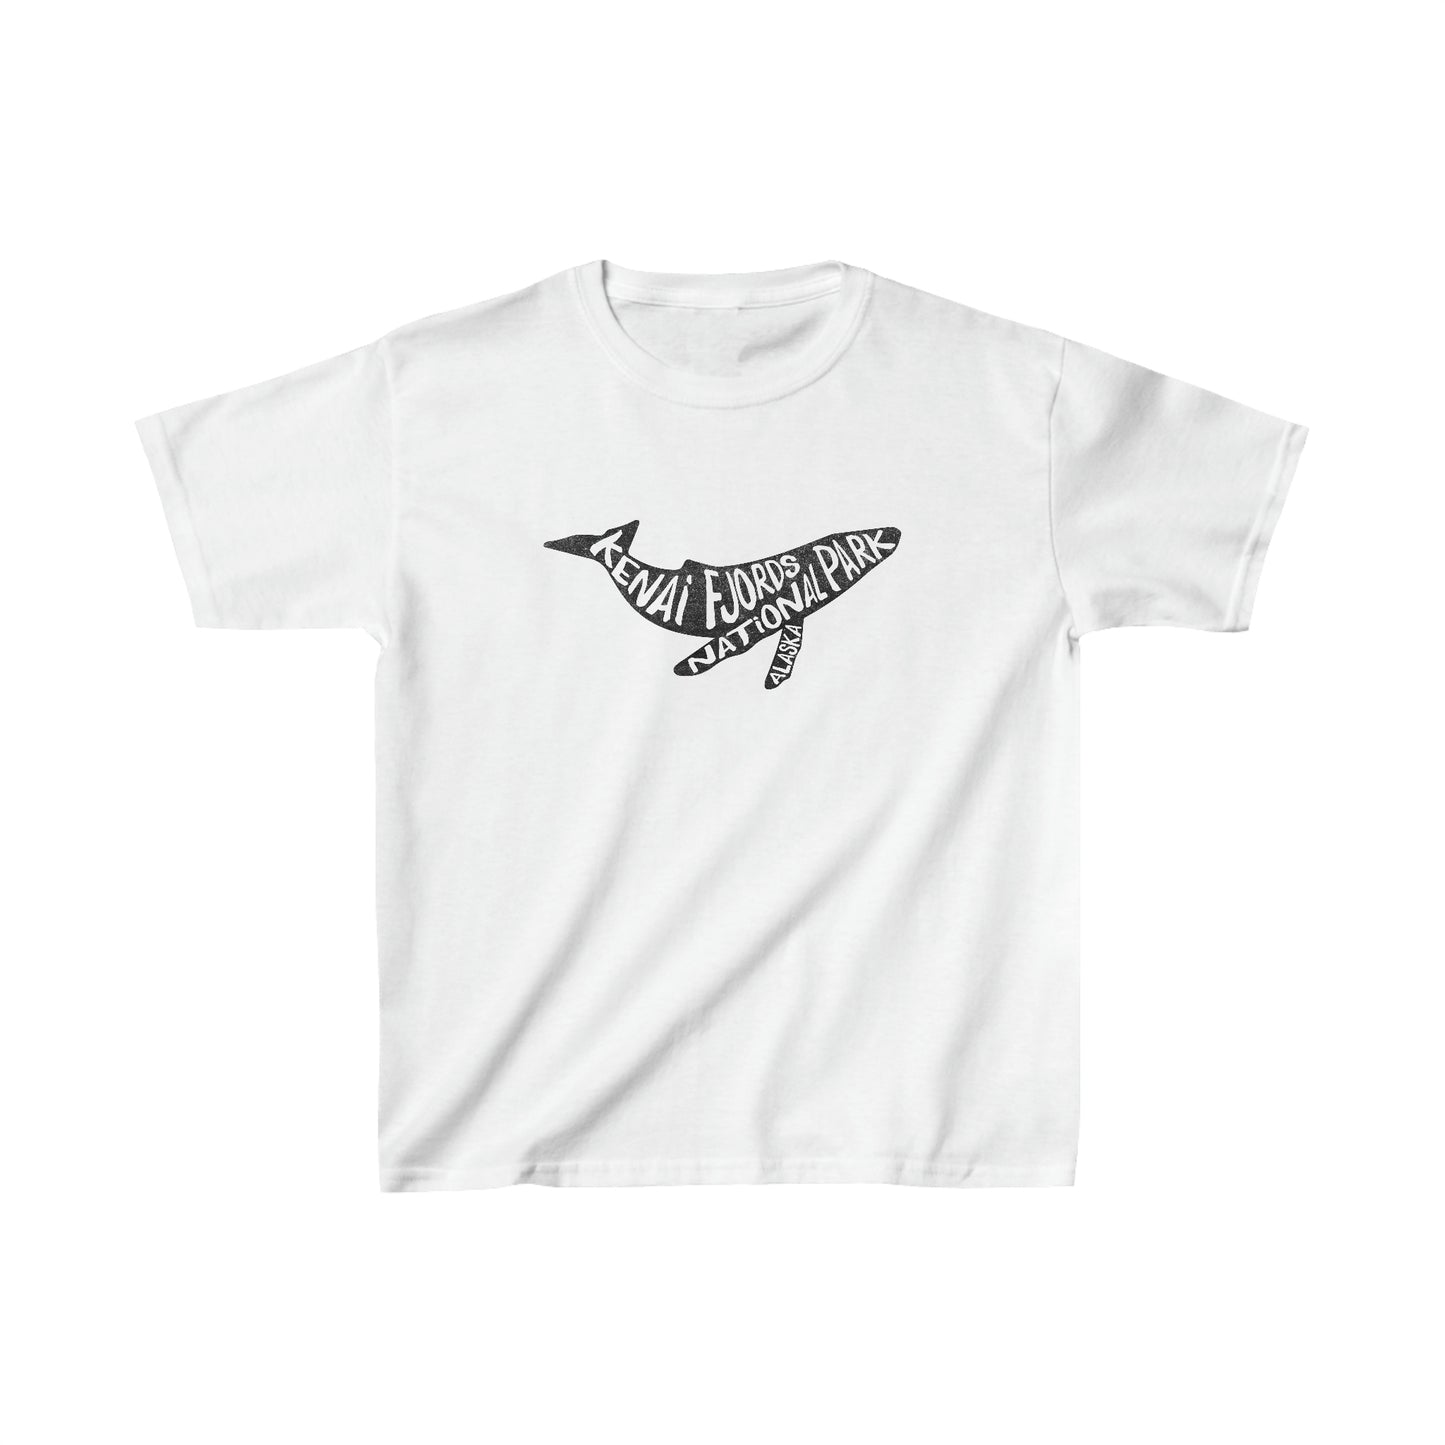 Kenai Fjords National Park Child T-Shirt - Humpback Whale Chunky Text